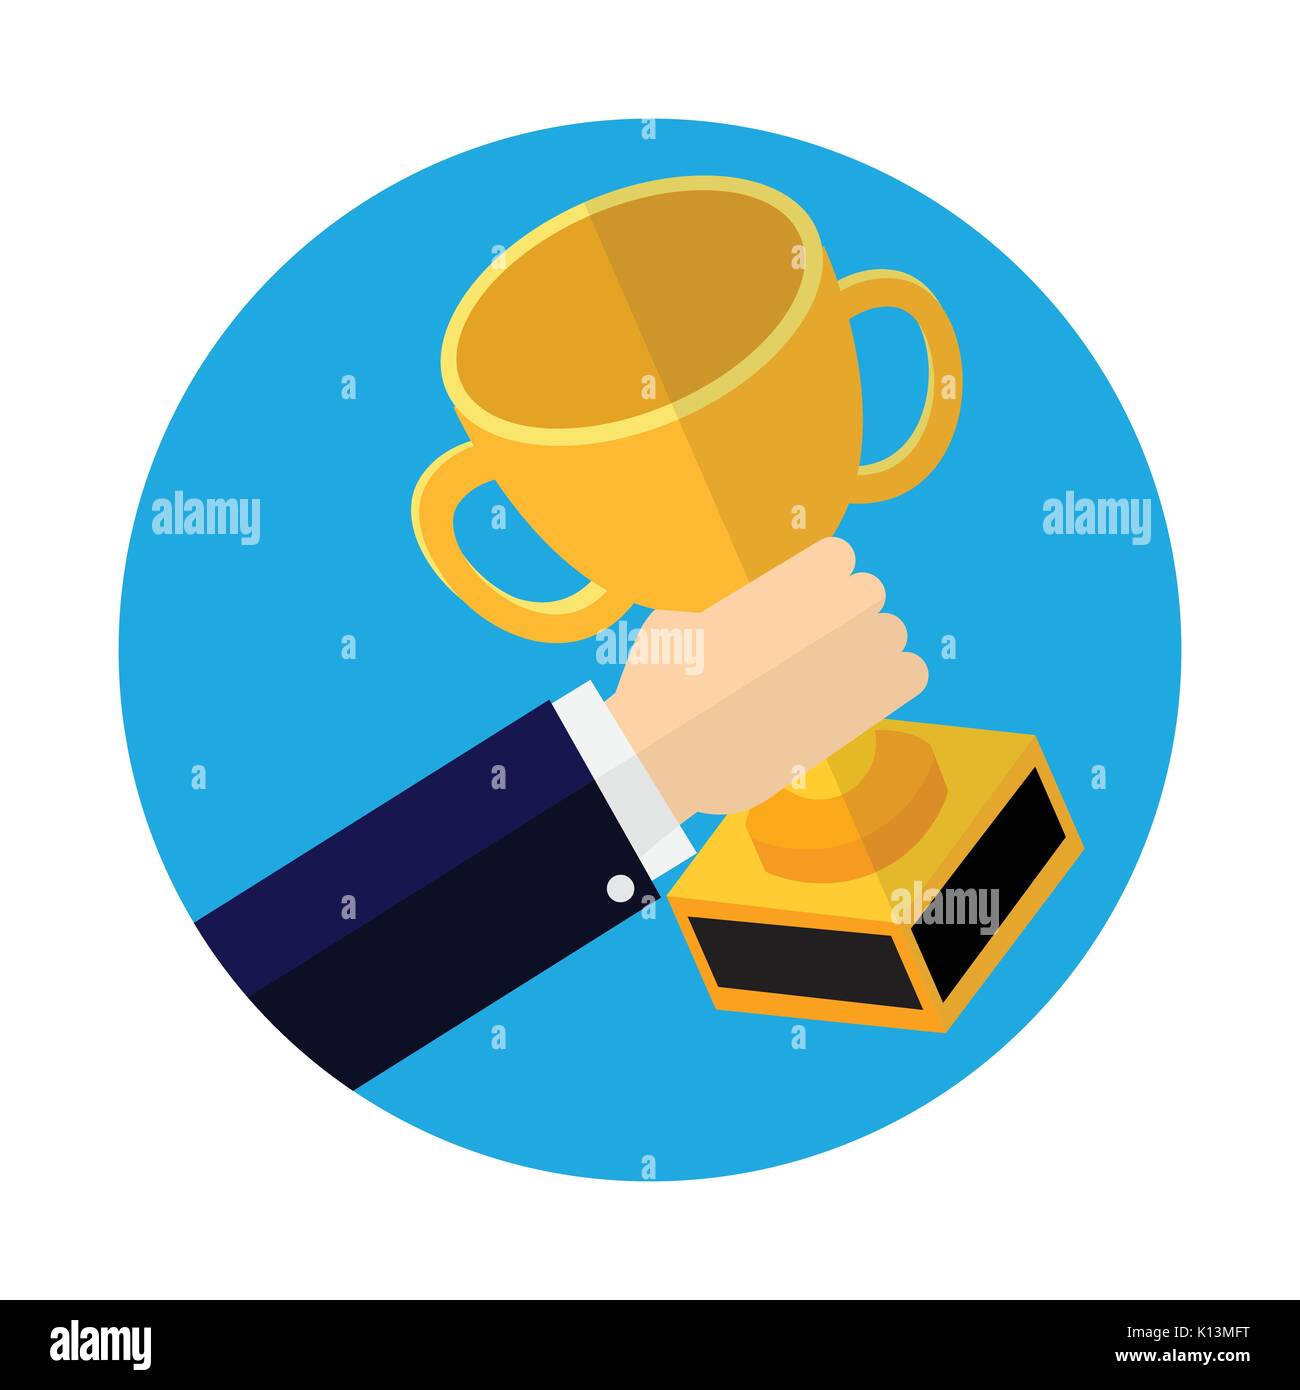 Die Unternehmer halten Cup Sieger, Sieger Trophy Cup, Grafik Design für Business Concept-Vector Illustration. Stock Vektor